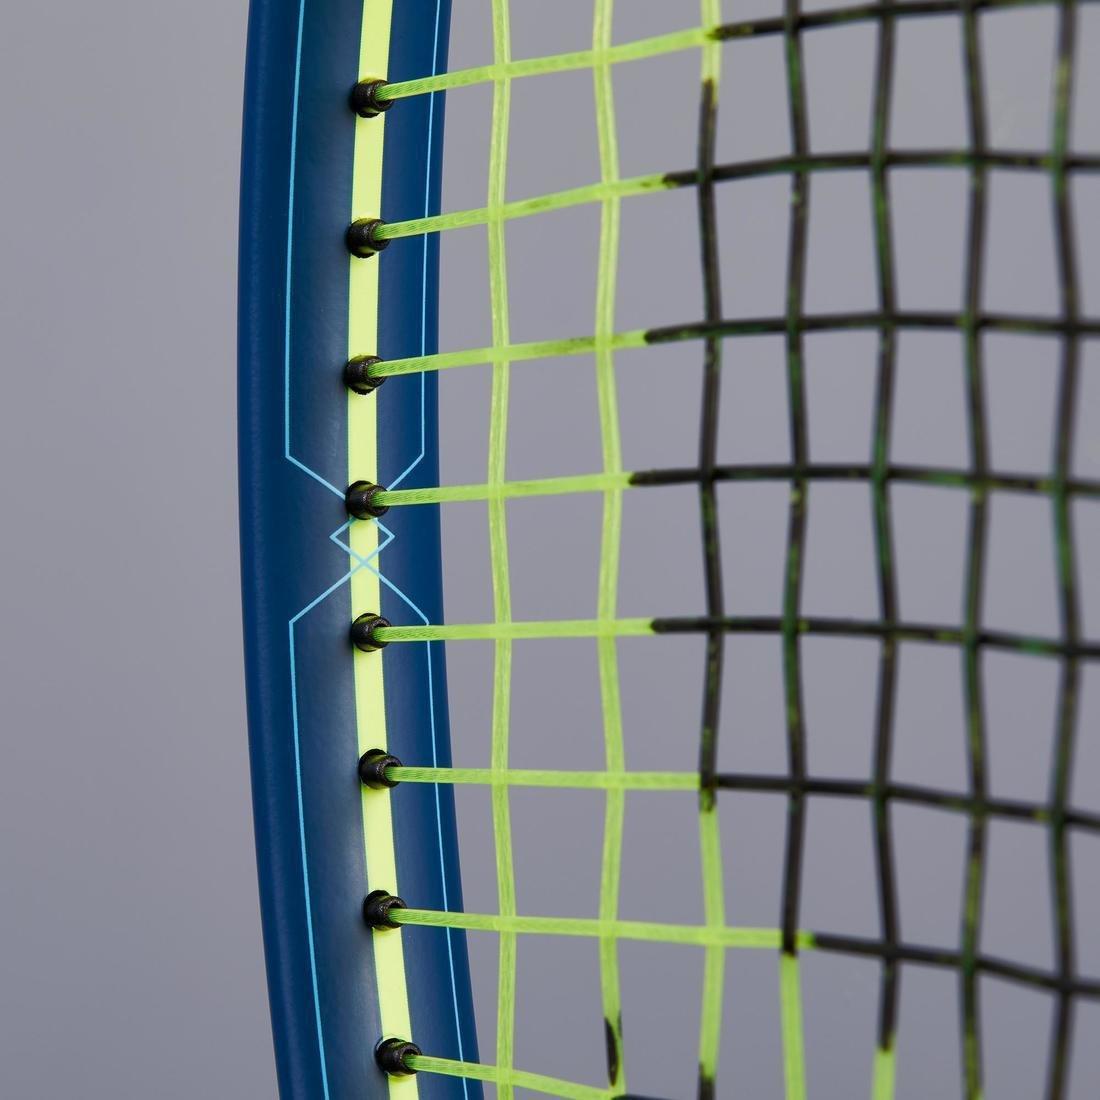 ARTENGO - Kids Tr530 25 Tennis Racket